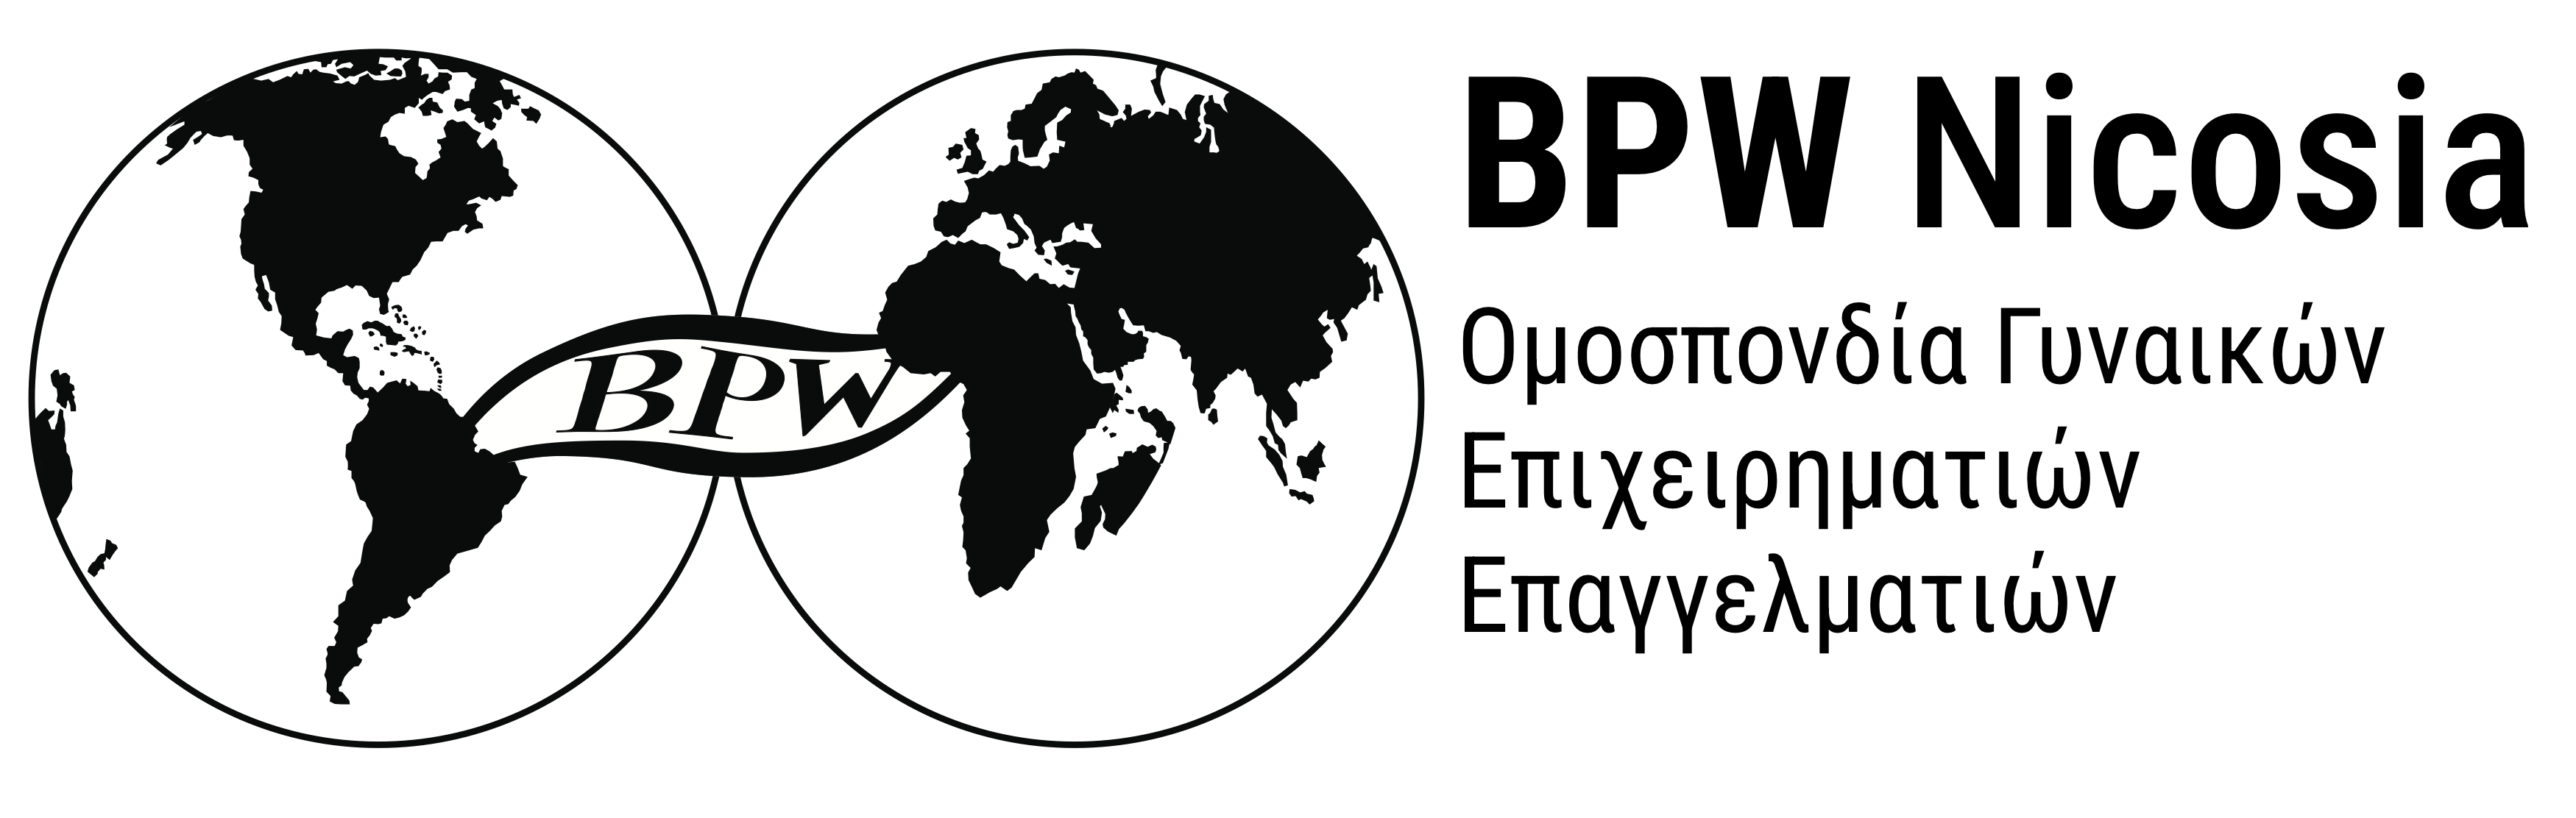 BPW-Nicosia